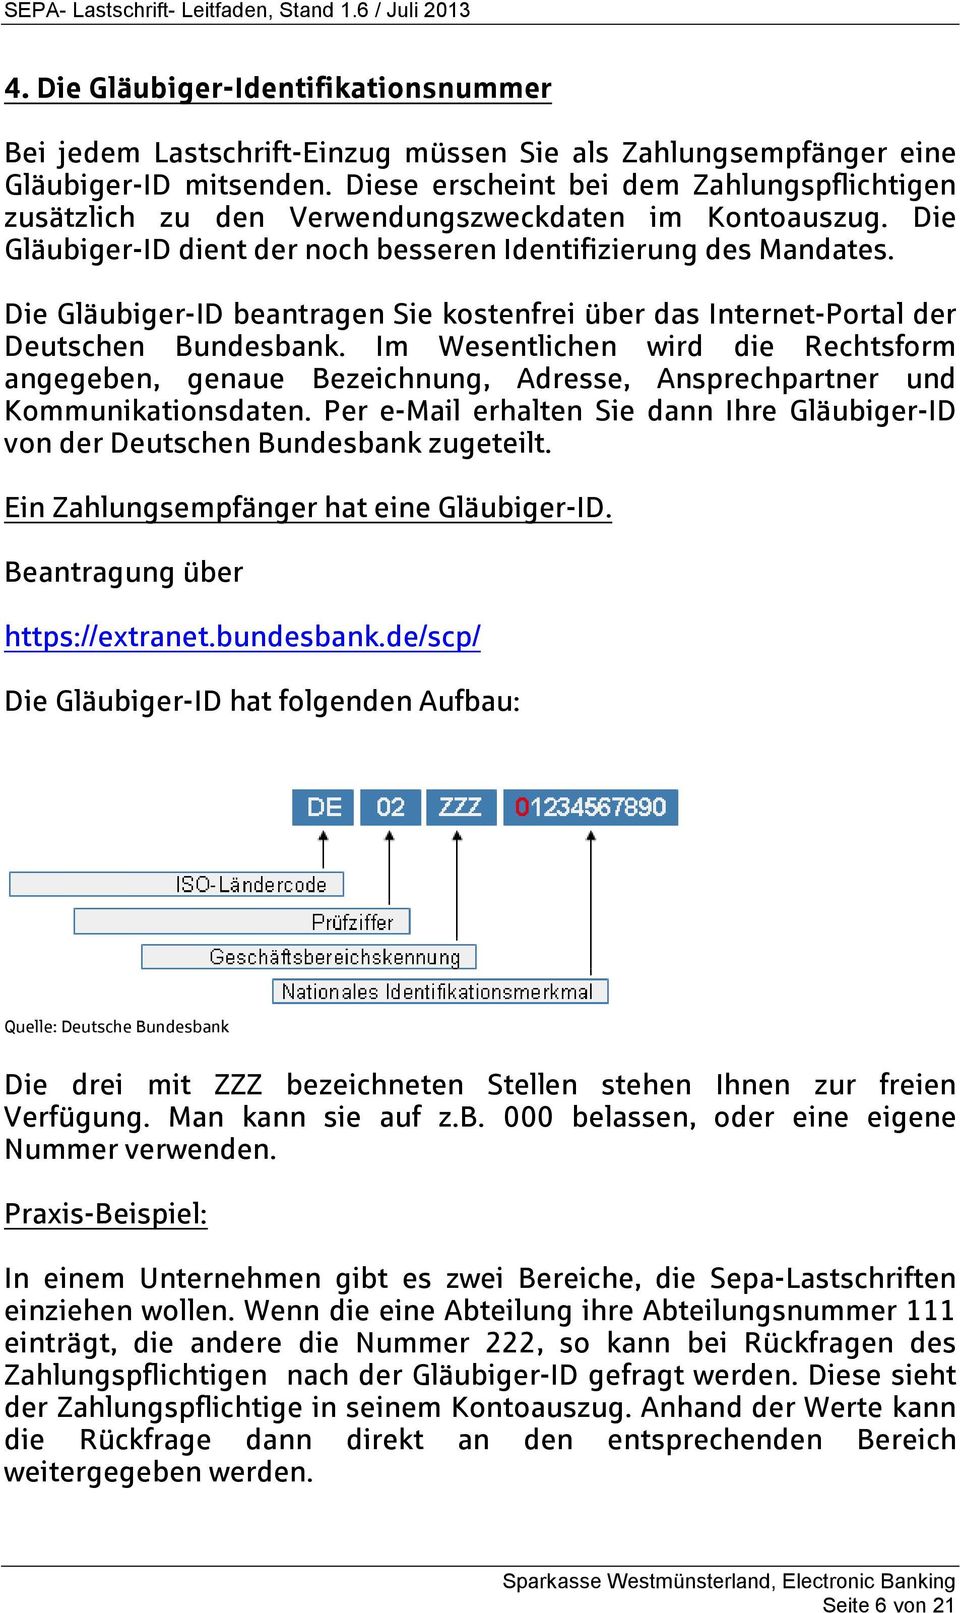 Die Gläubiger-ID beantragen Sie kostenfrei über das Internet-Portal der Deutschen Bundesbank.